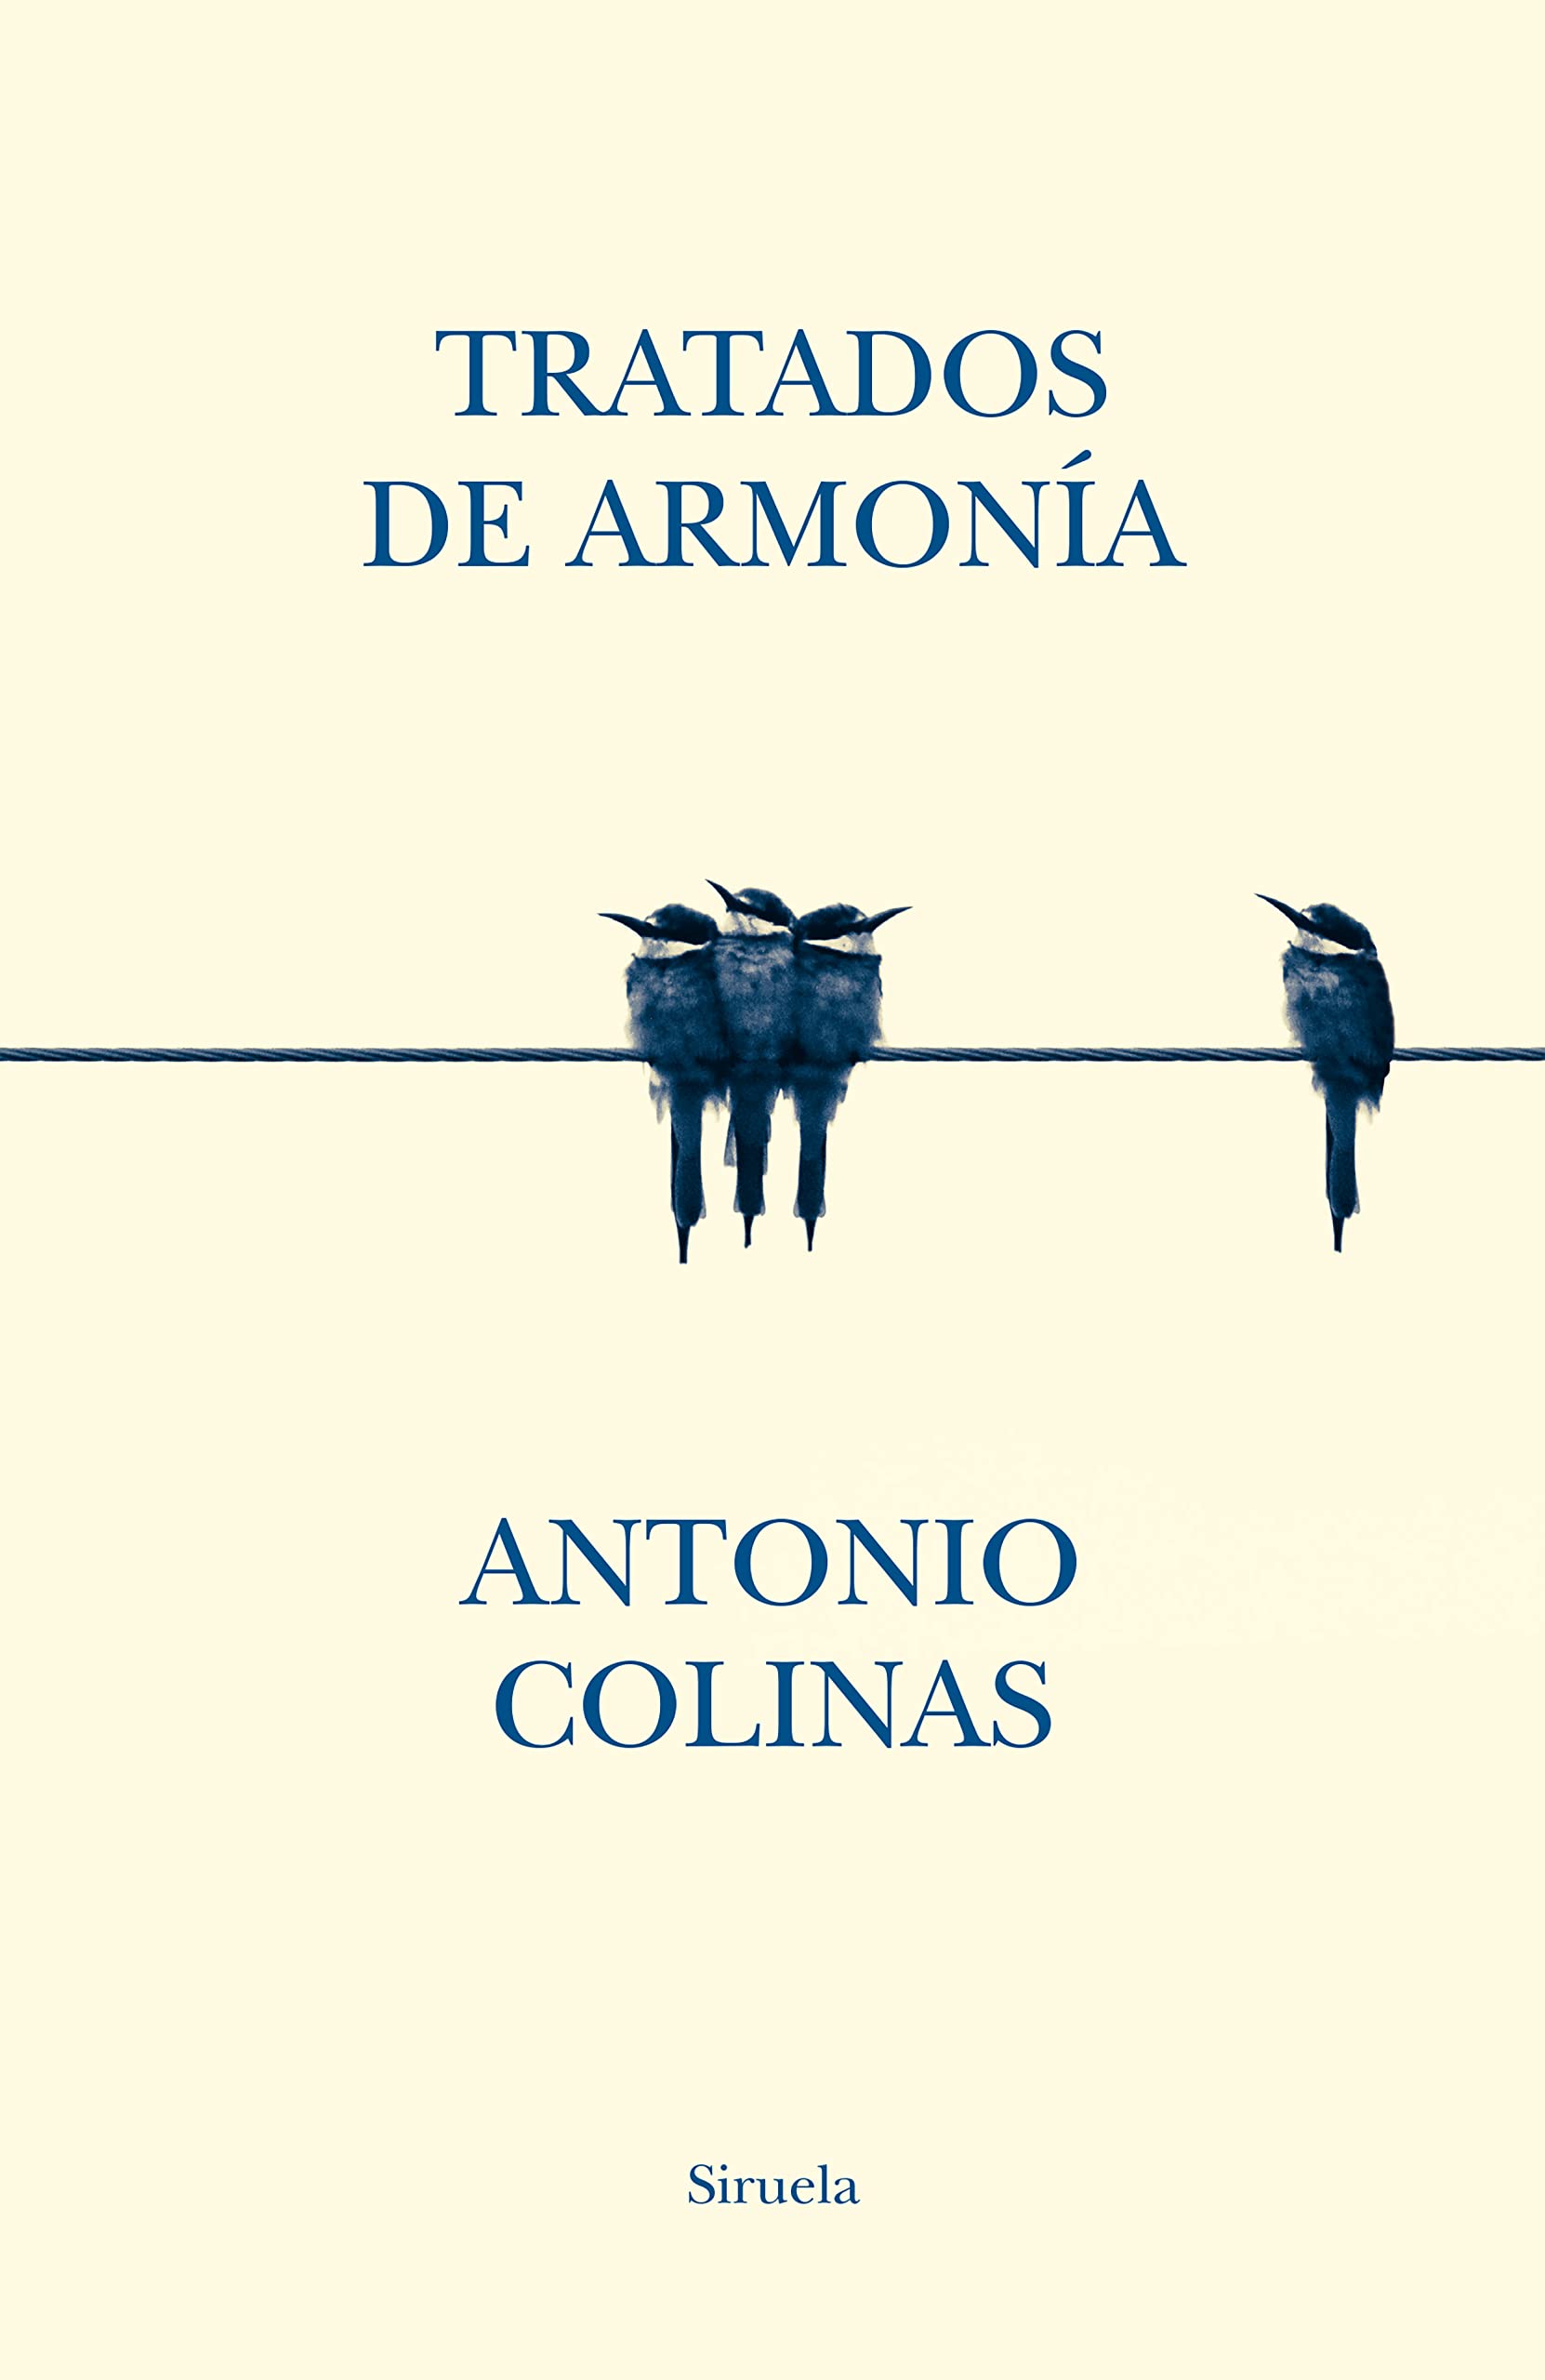 Tratados de armonía, de Antonio Colinas